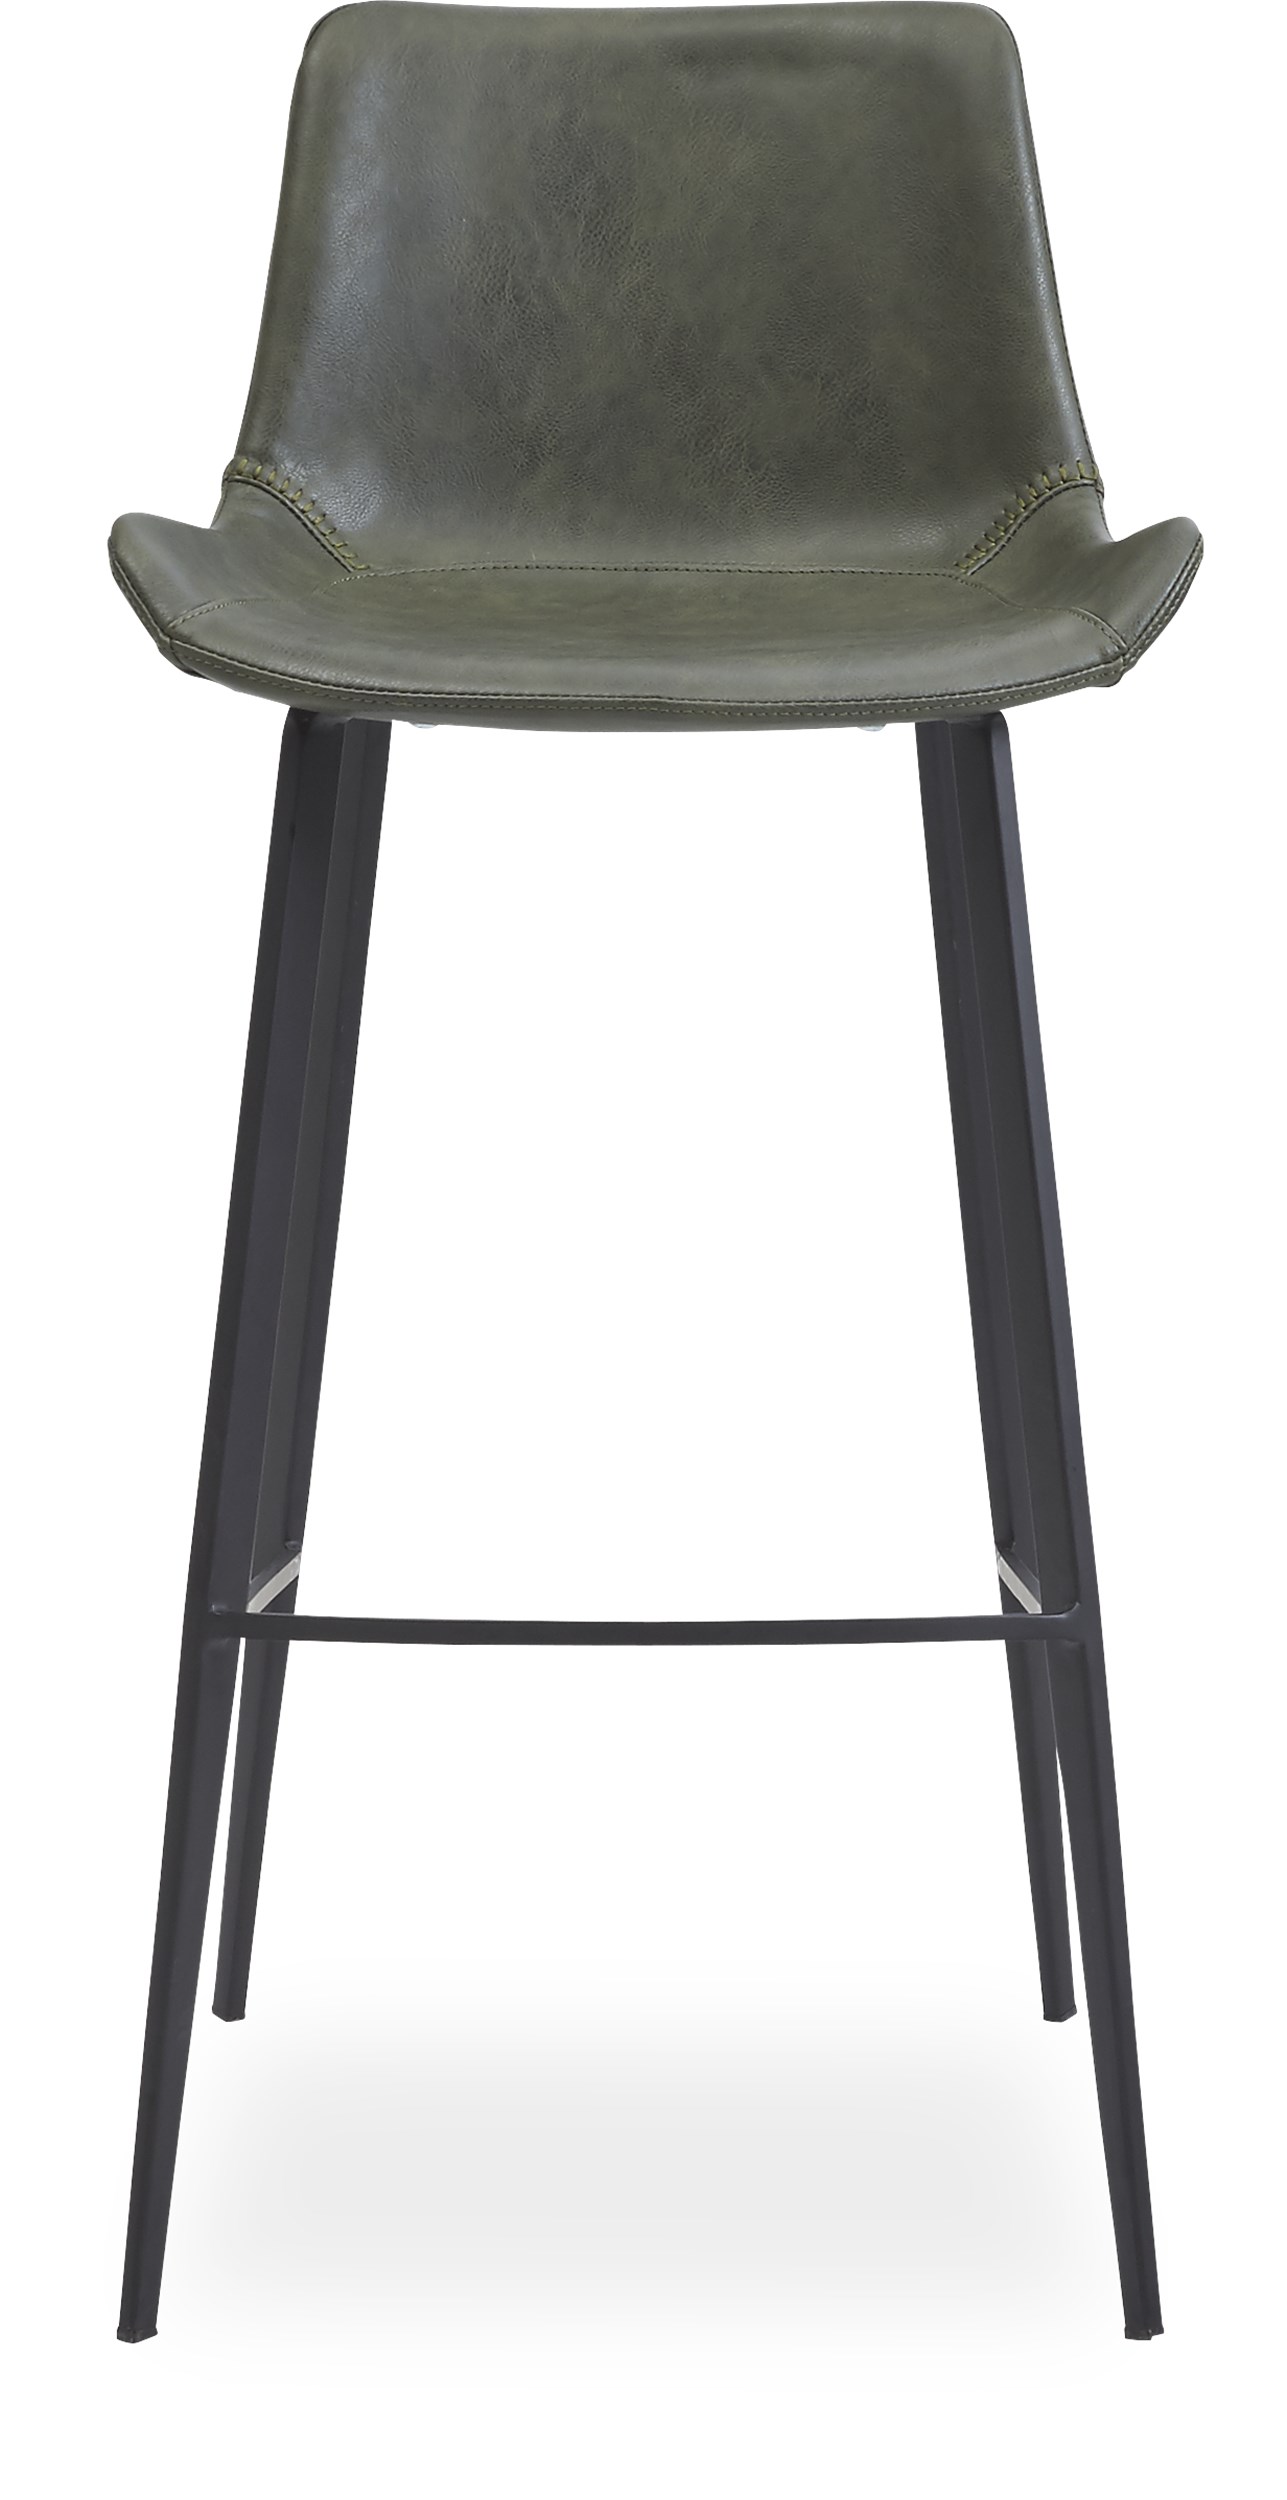 Hype Barstol - Sæde i Vintage grøn kunstlæder og ben i sortlakeret metal